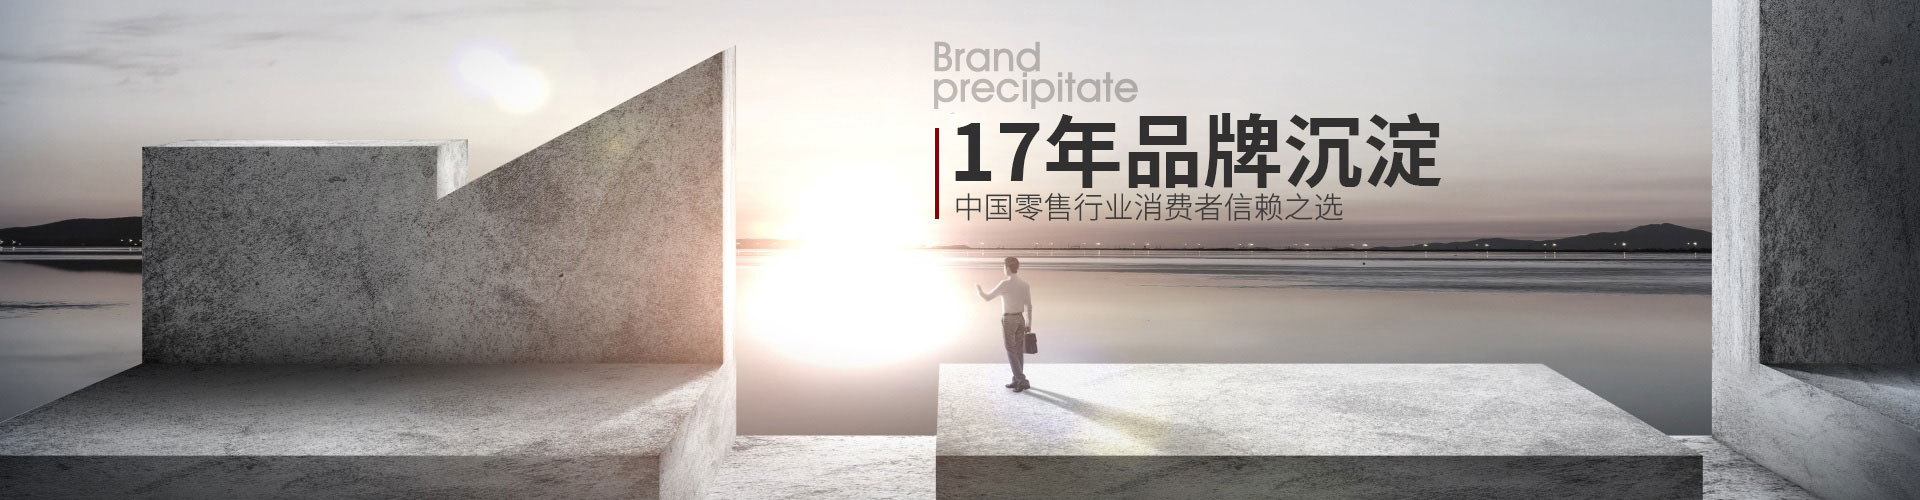 合家欢-15年品牌沉淀,中国零售行业消费者信赖之选